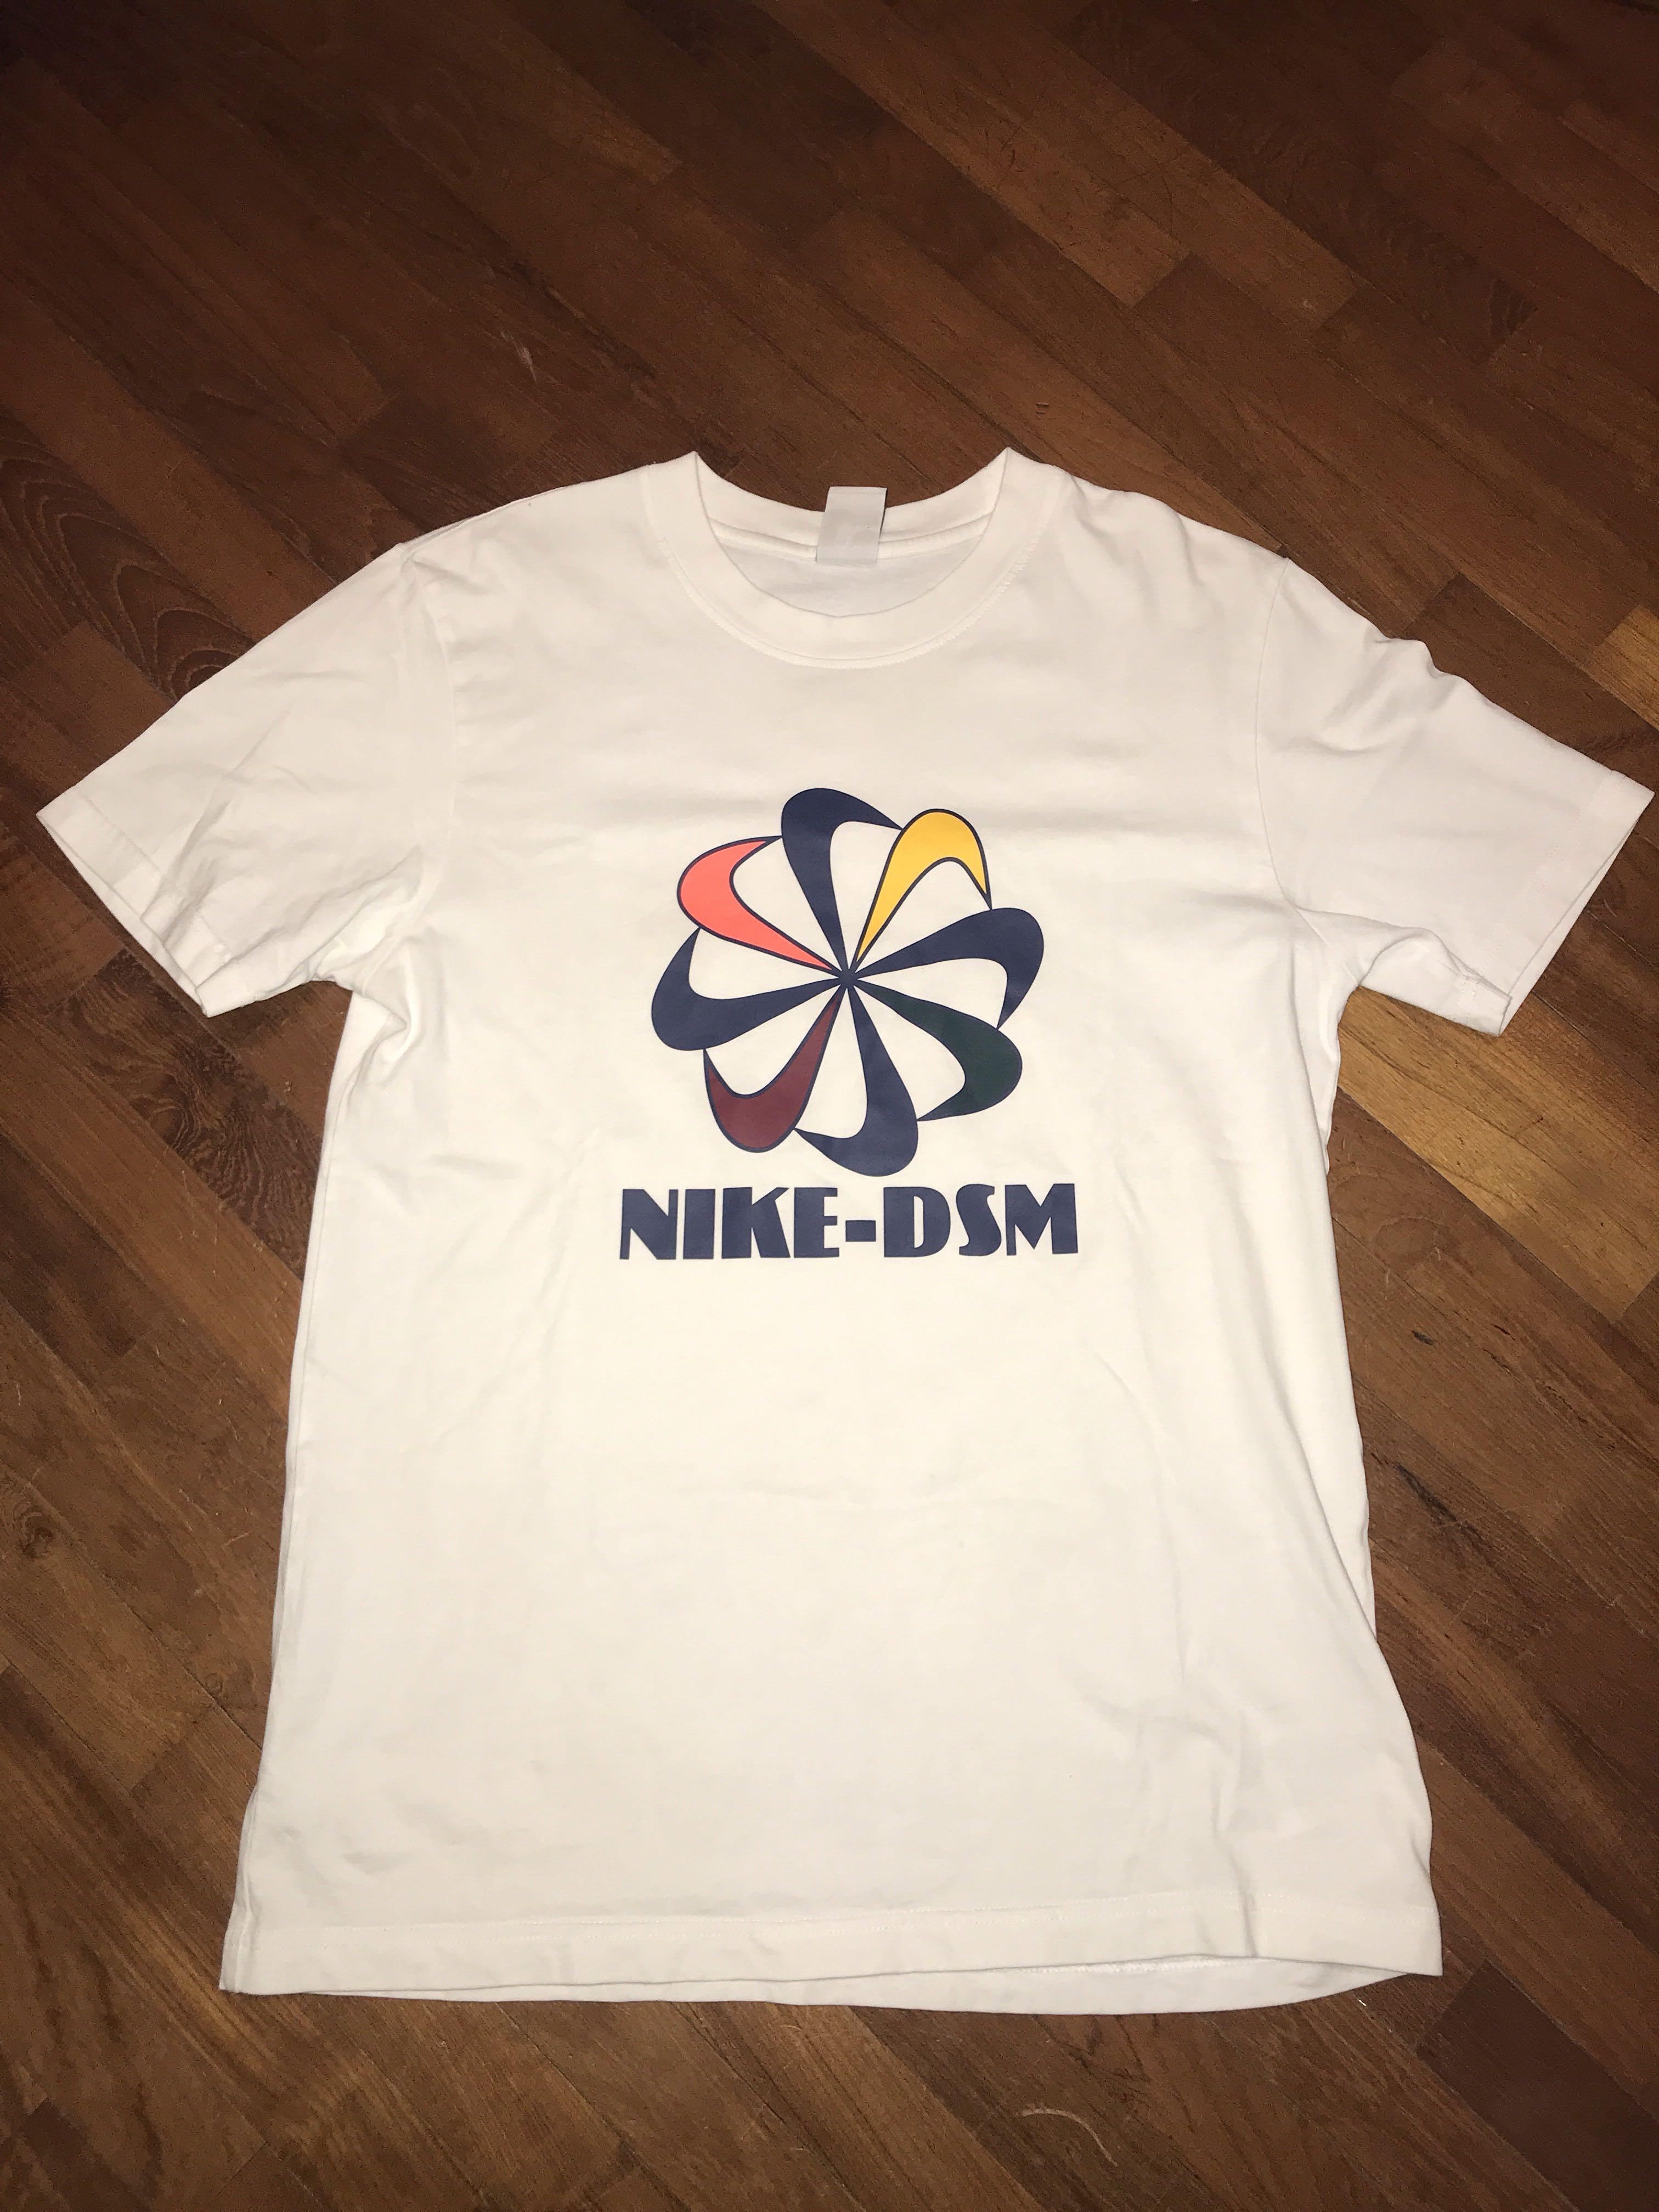 Nike X DSM pinwheel tee shirt, Men's Fashion, Tops & Sets, Tshirts